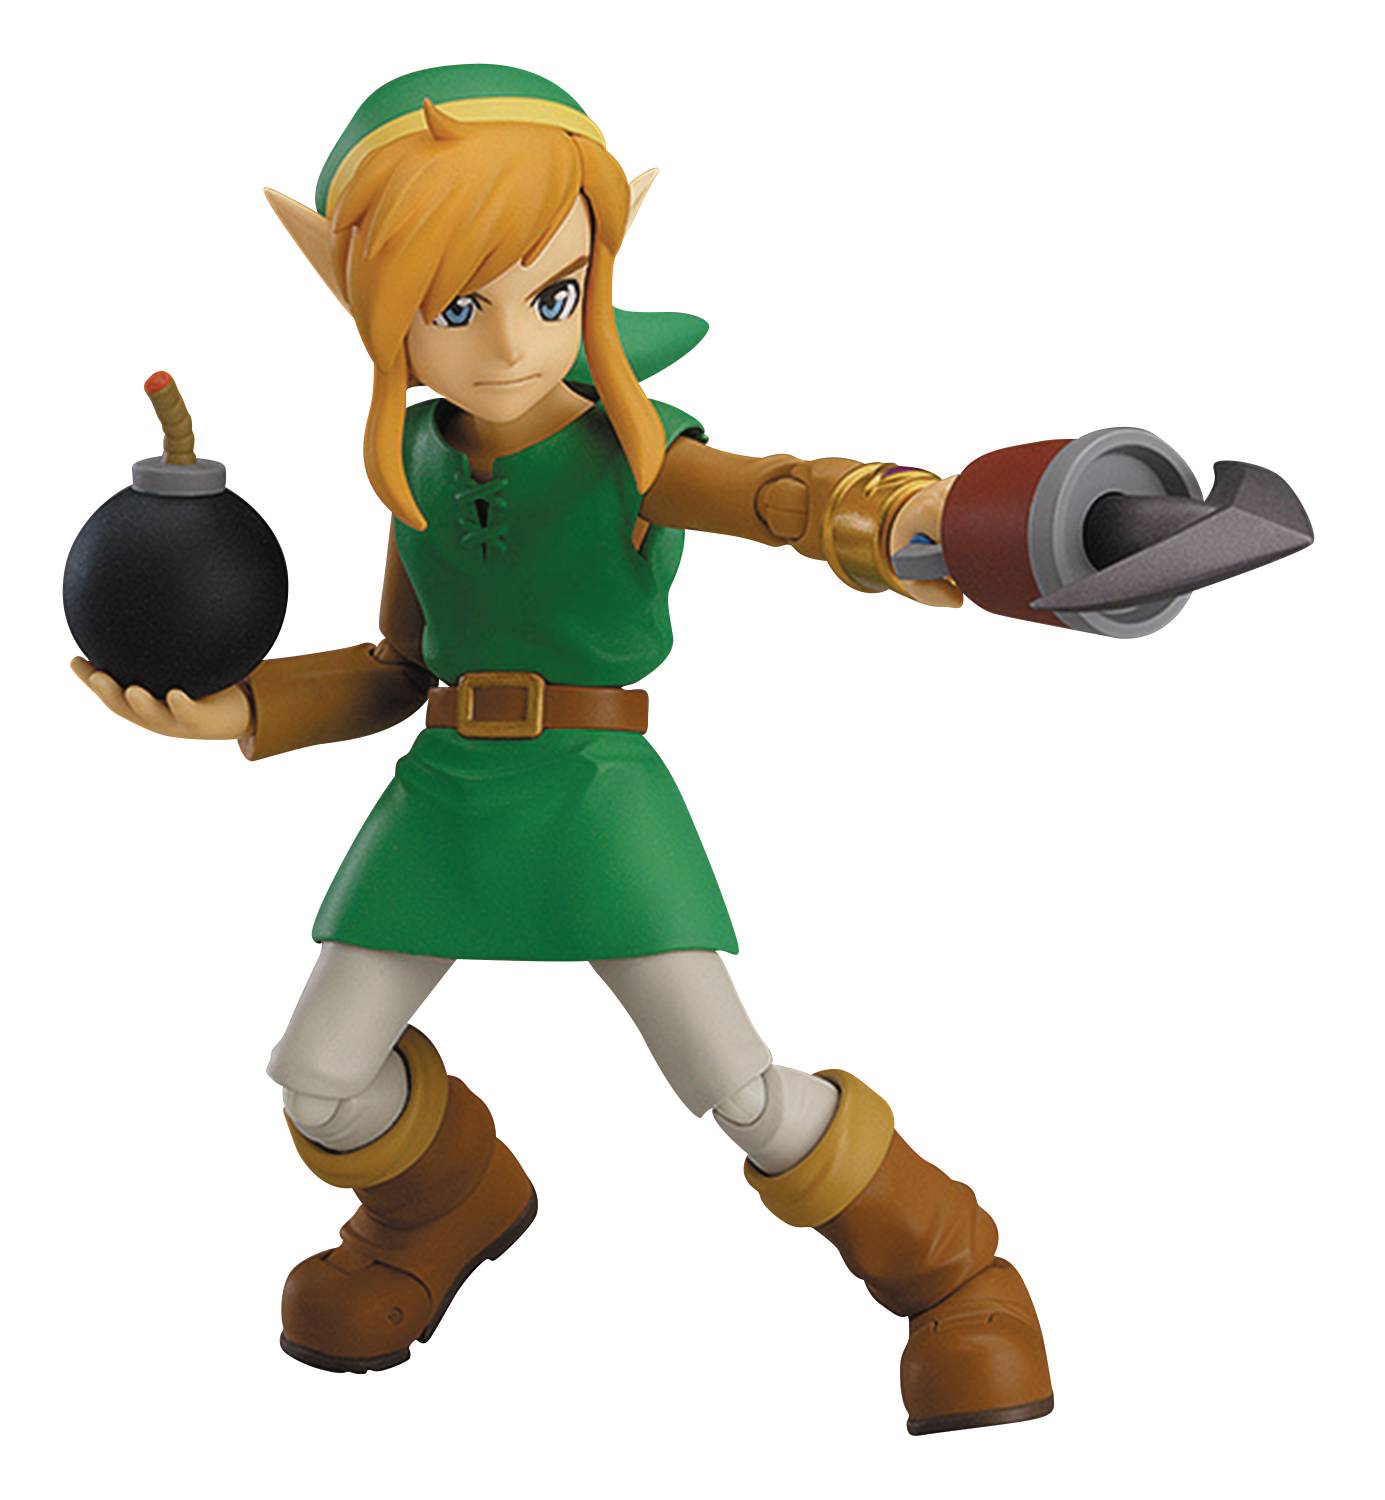 Legend of Zelda Link Between Worlds Link Figma Action Figure Dx Version